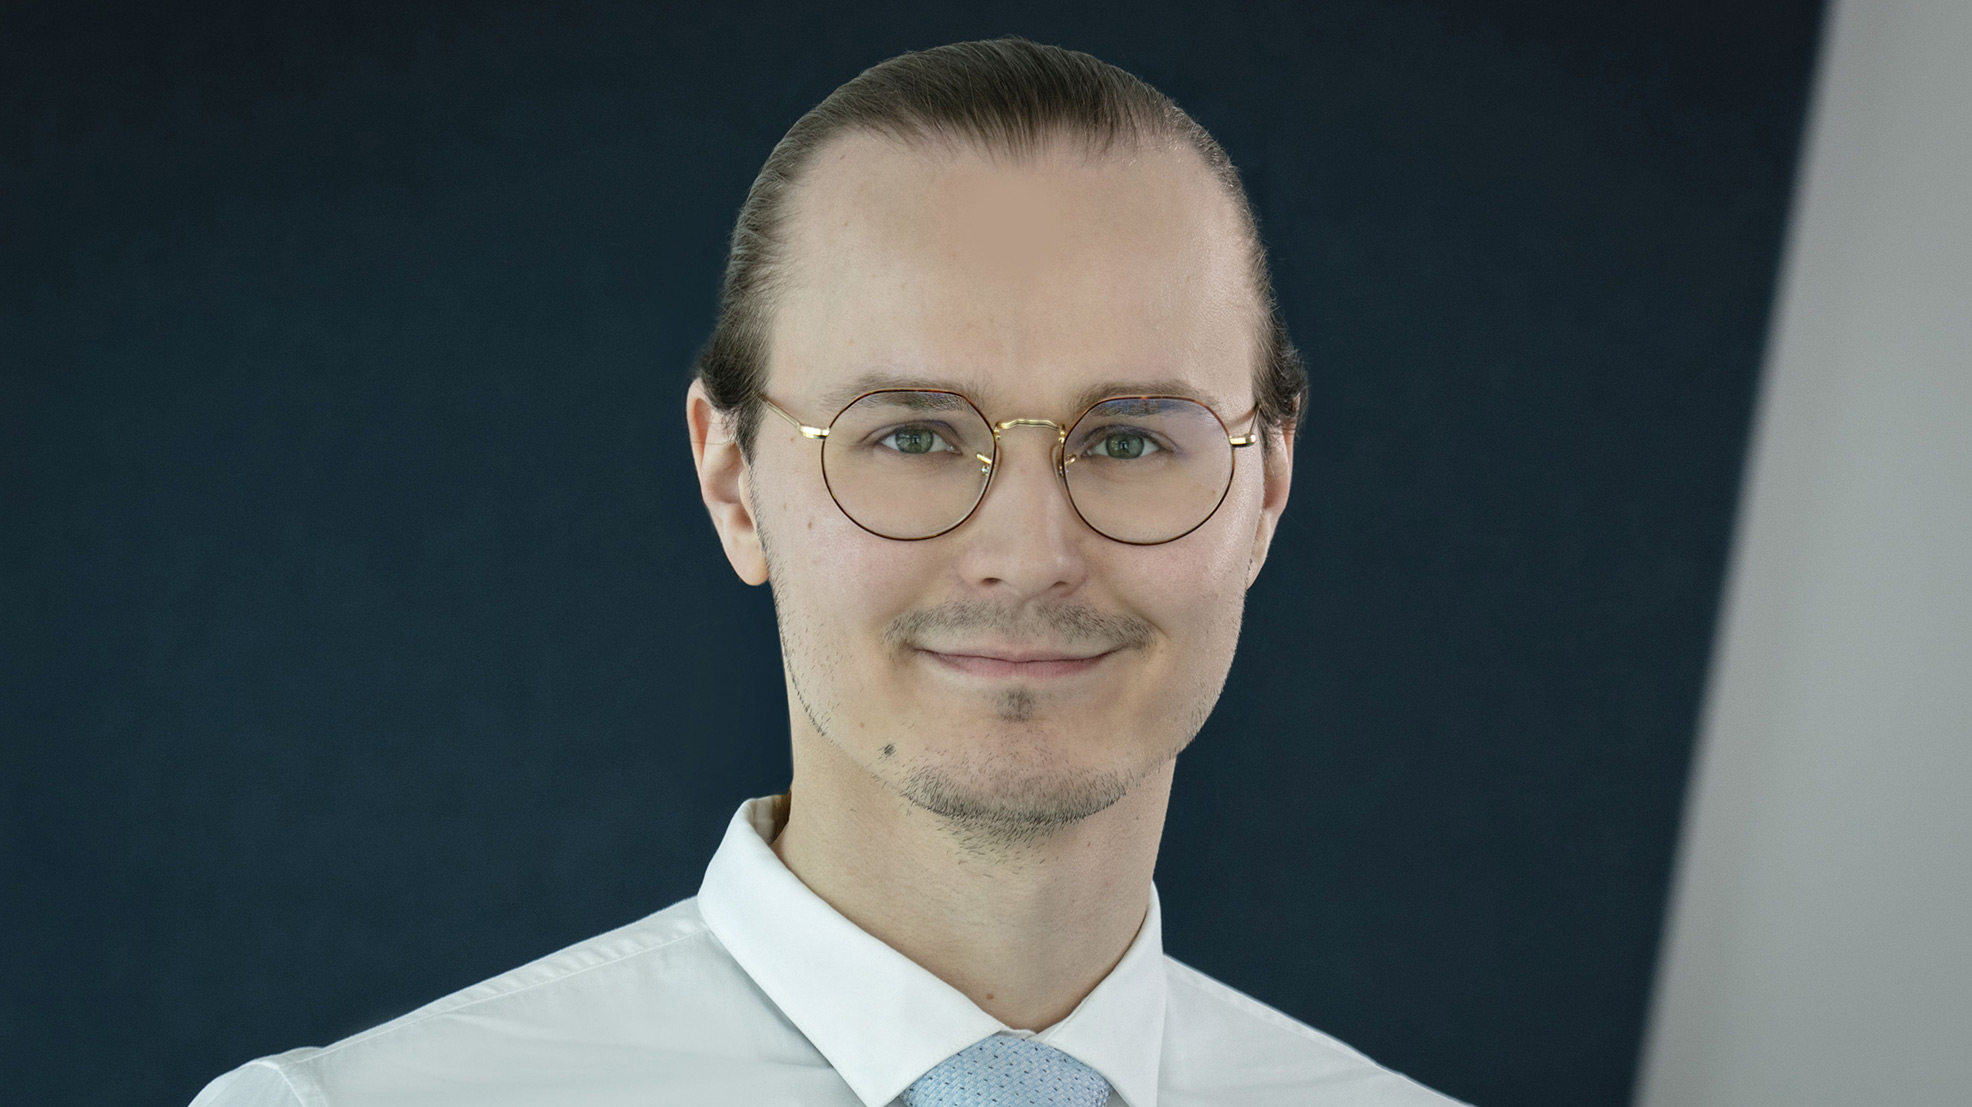 SAK:n yhteiskuntavaikuttamisen päällikkö Niko Pankka.